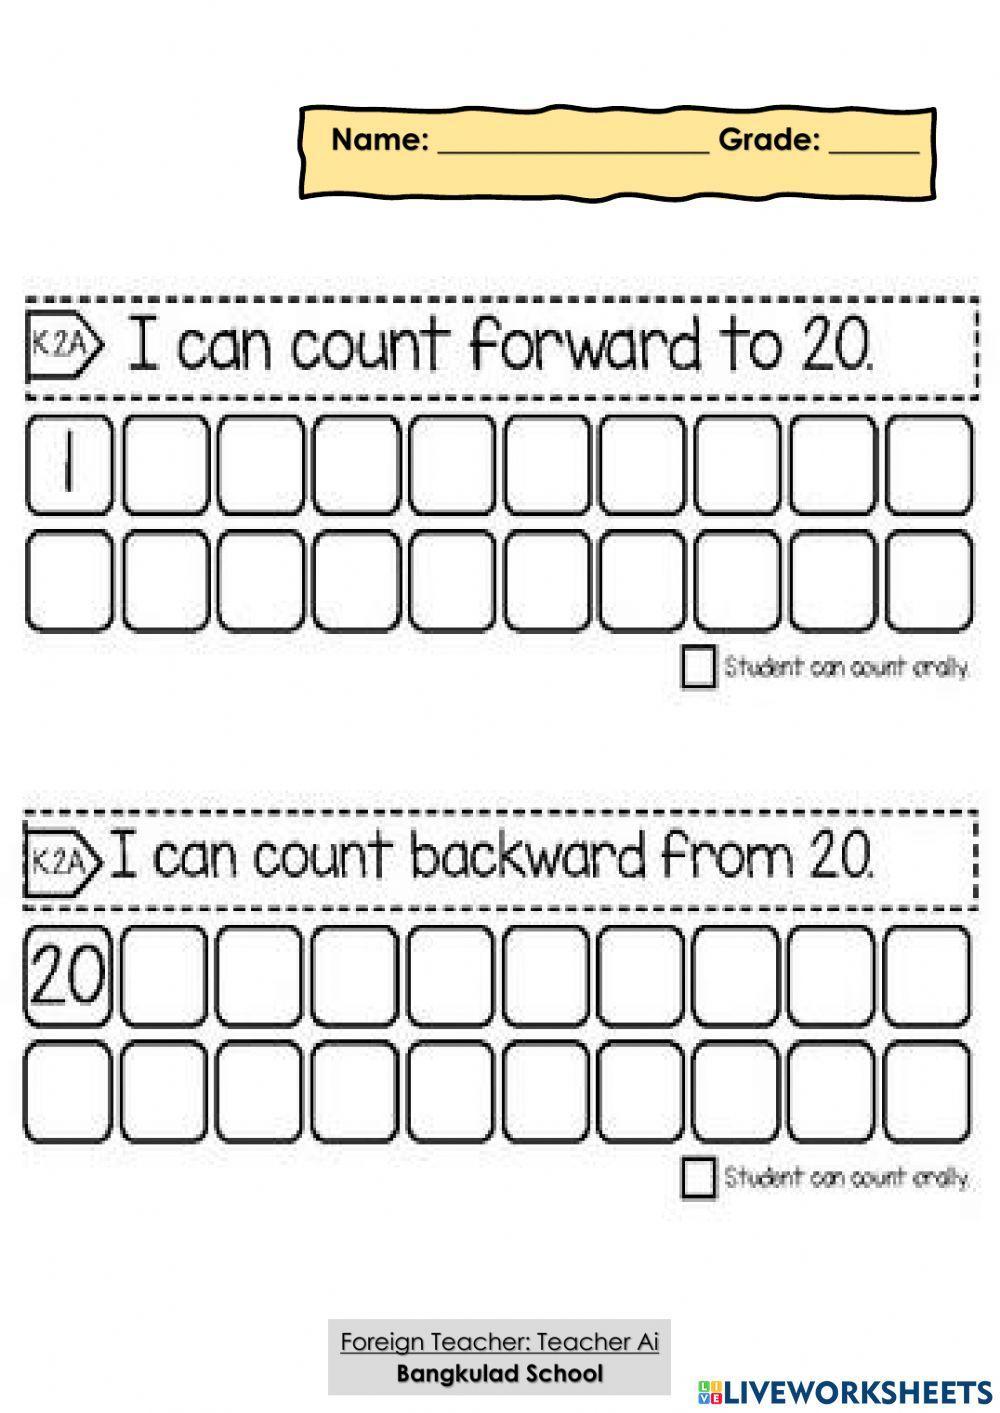 Counting forward and backward